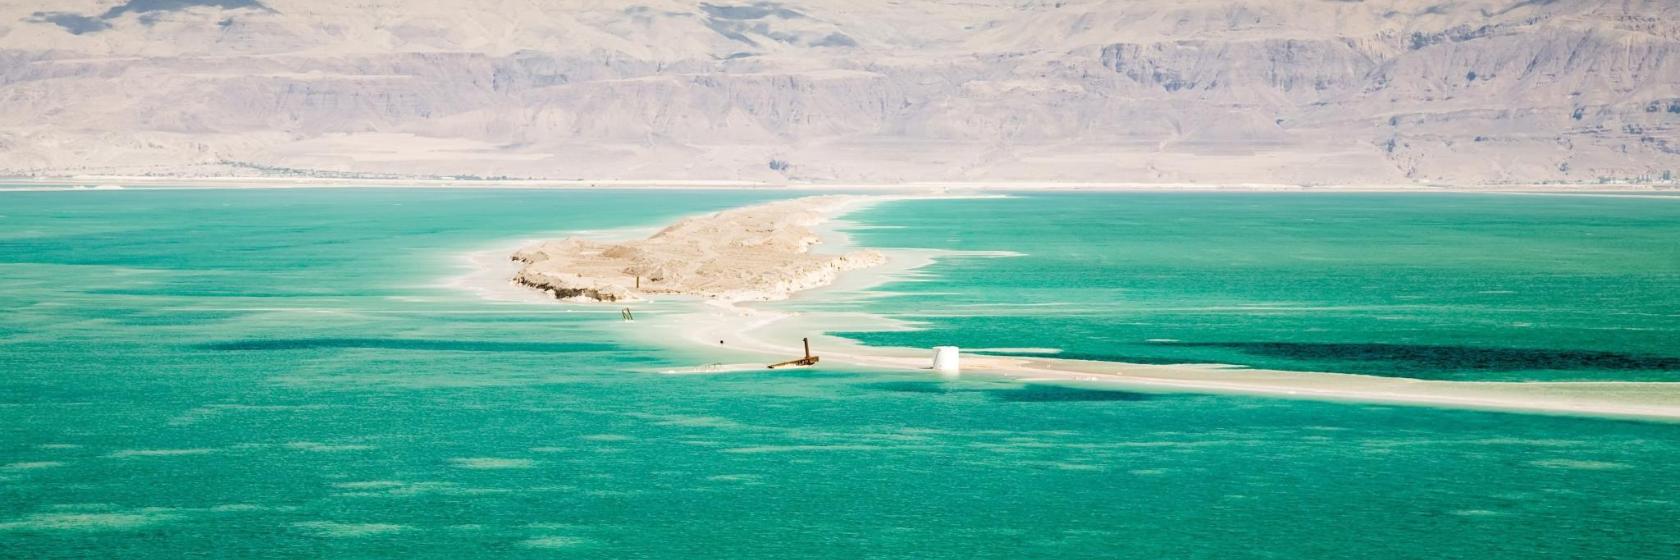 10 המלונות הכי טובים ב-ים המלח - ירדן - איפה לשהות ב-ים המלח - ירדן, ירדן